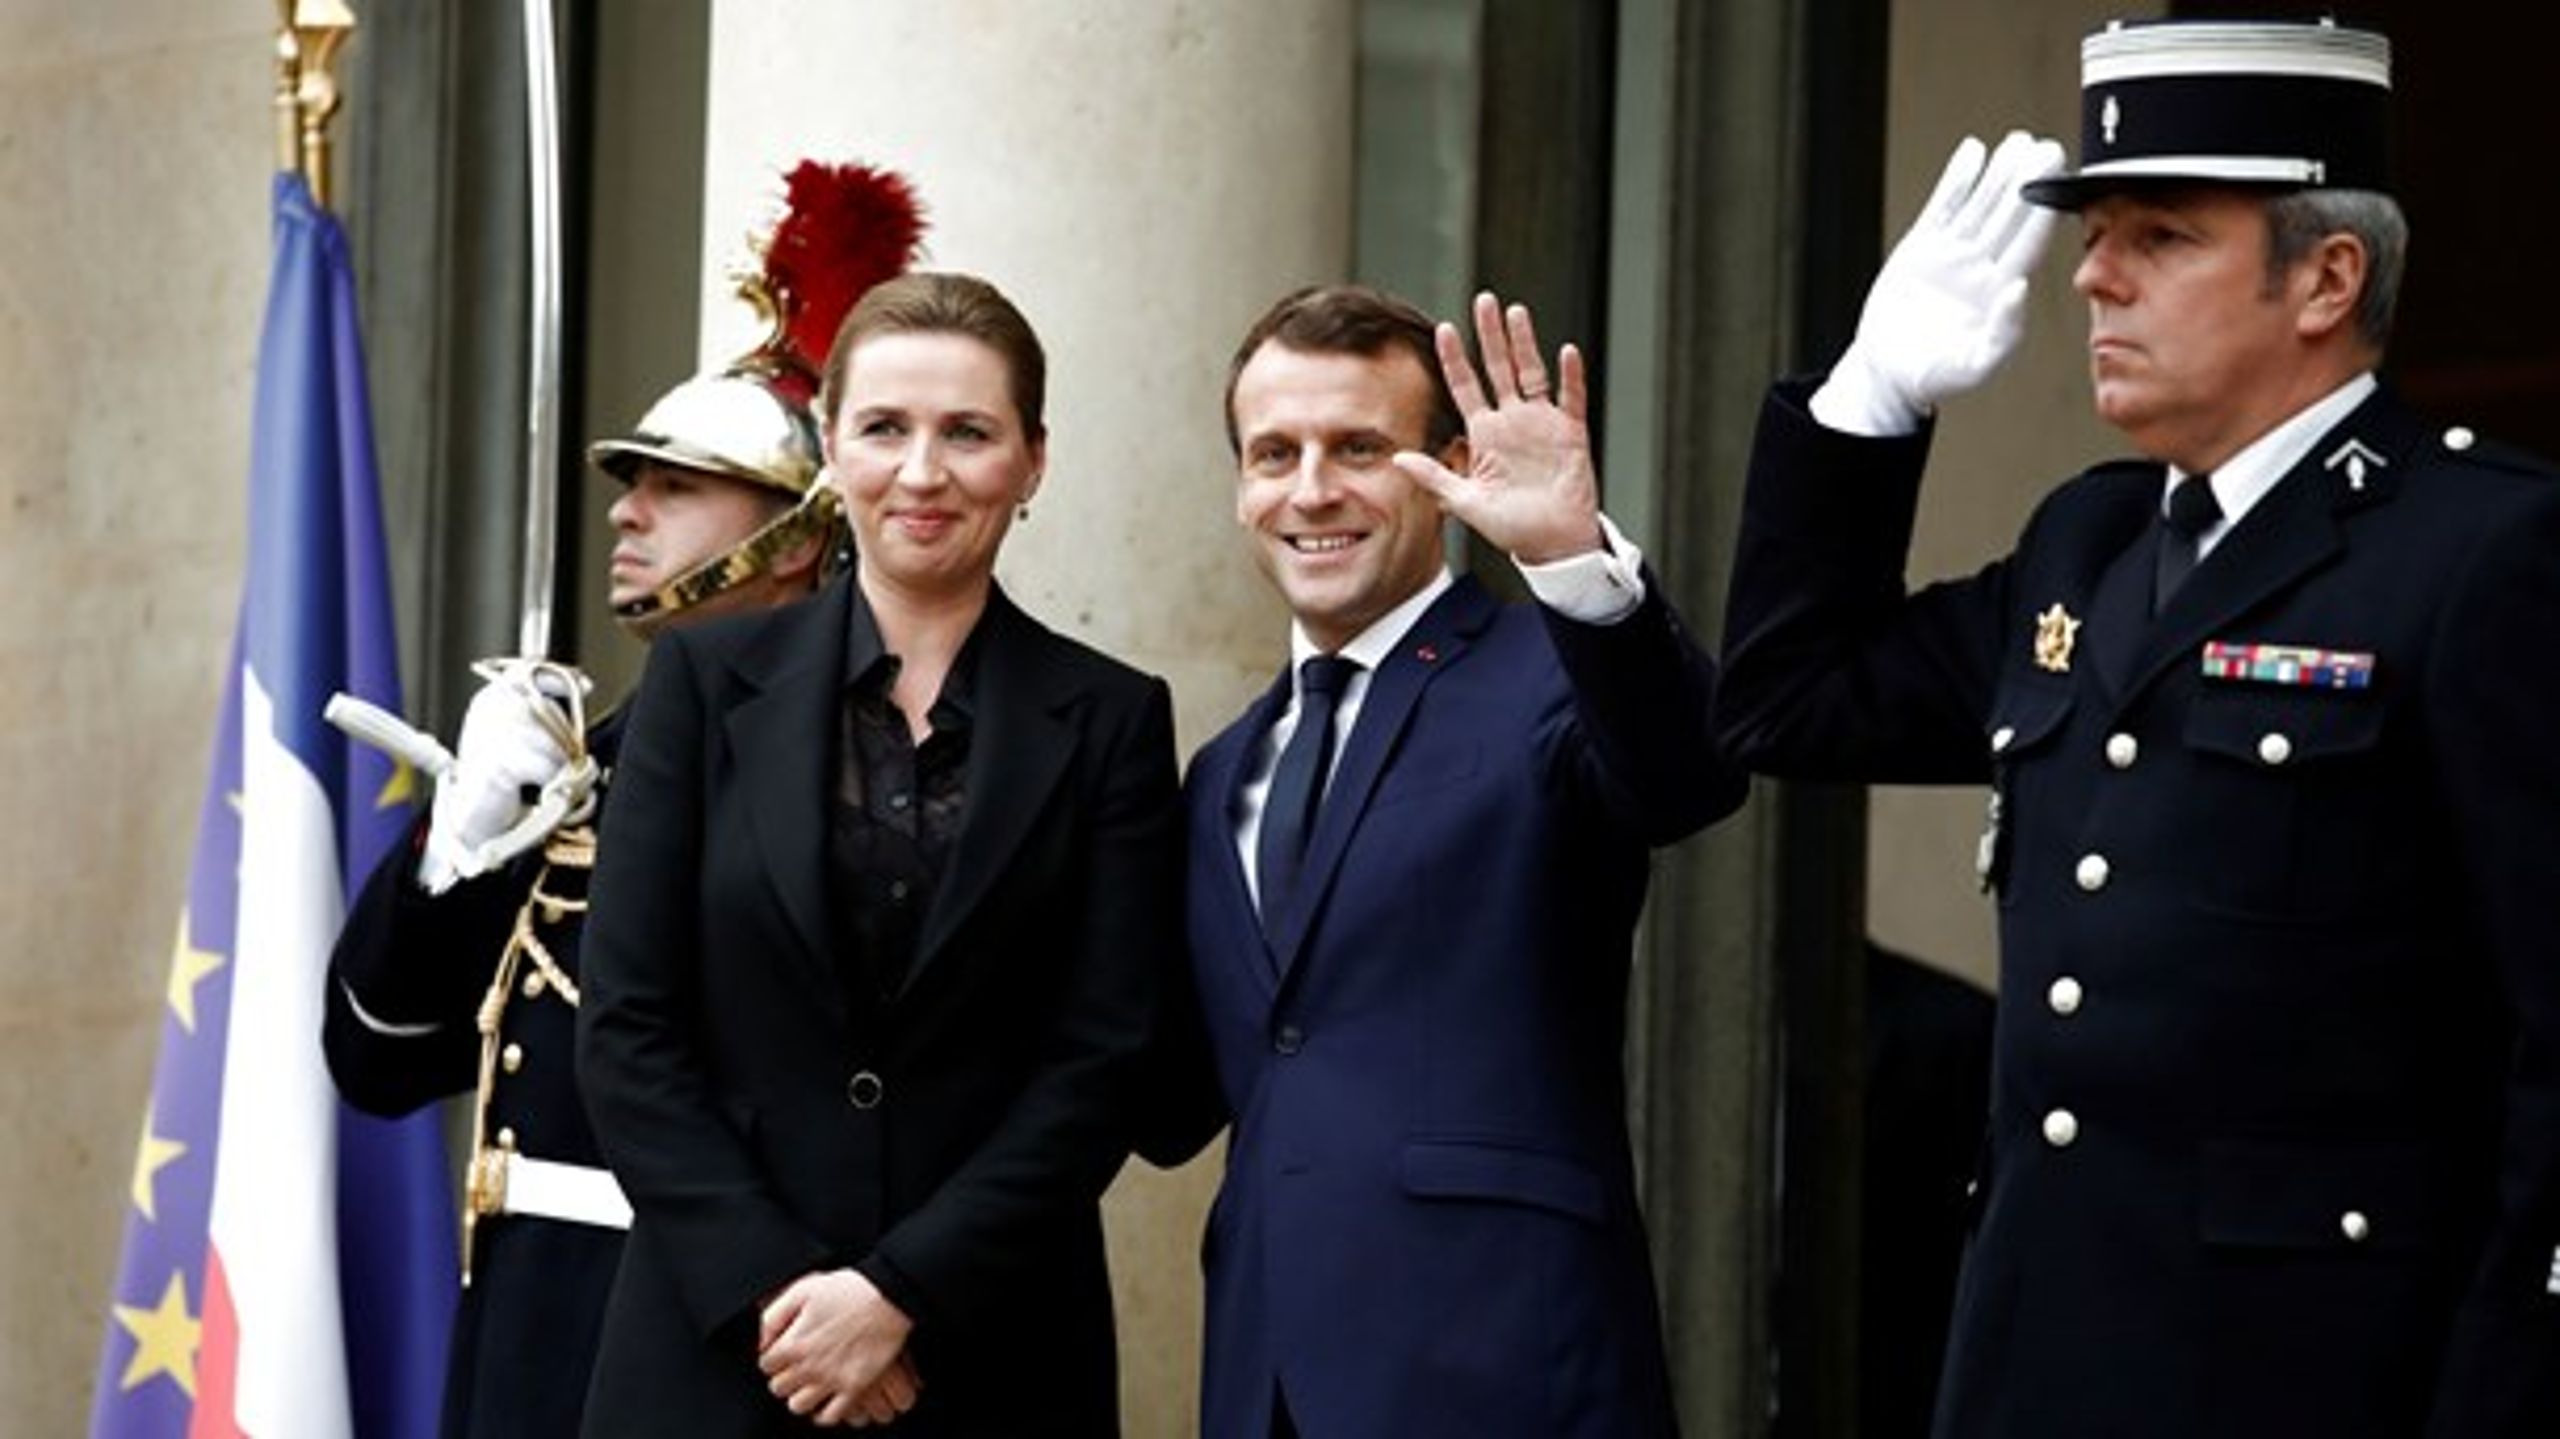 Danmarks statsminister, Mette Frederiksen (t.v.), besøger Frankrigs præsident, Emmanuel Macron (t.h.), i november 2019.